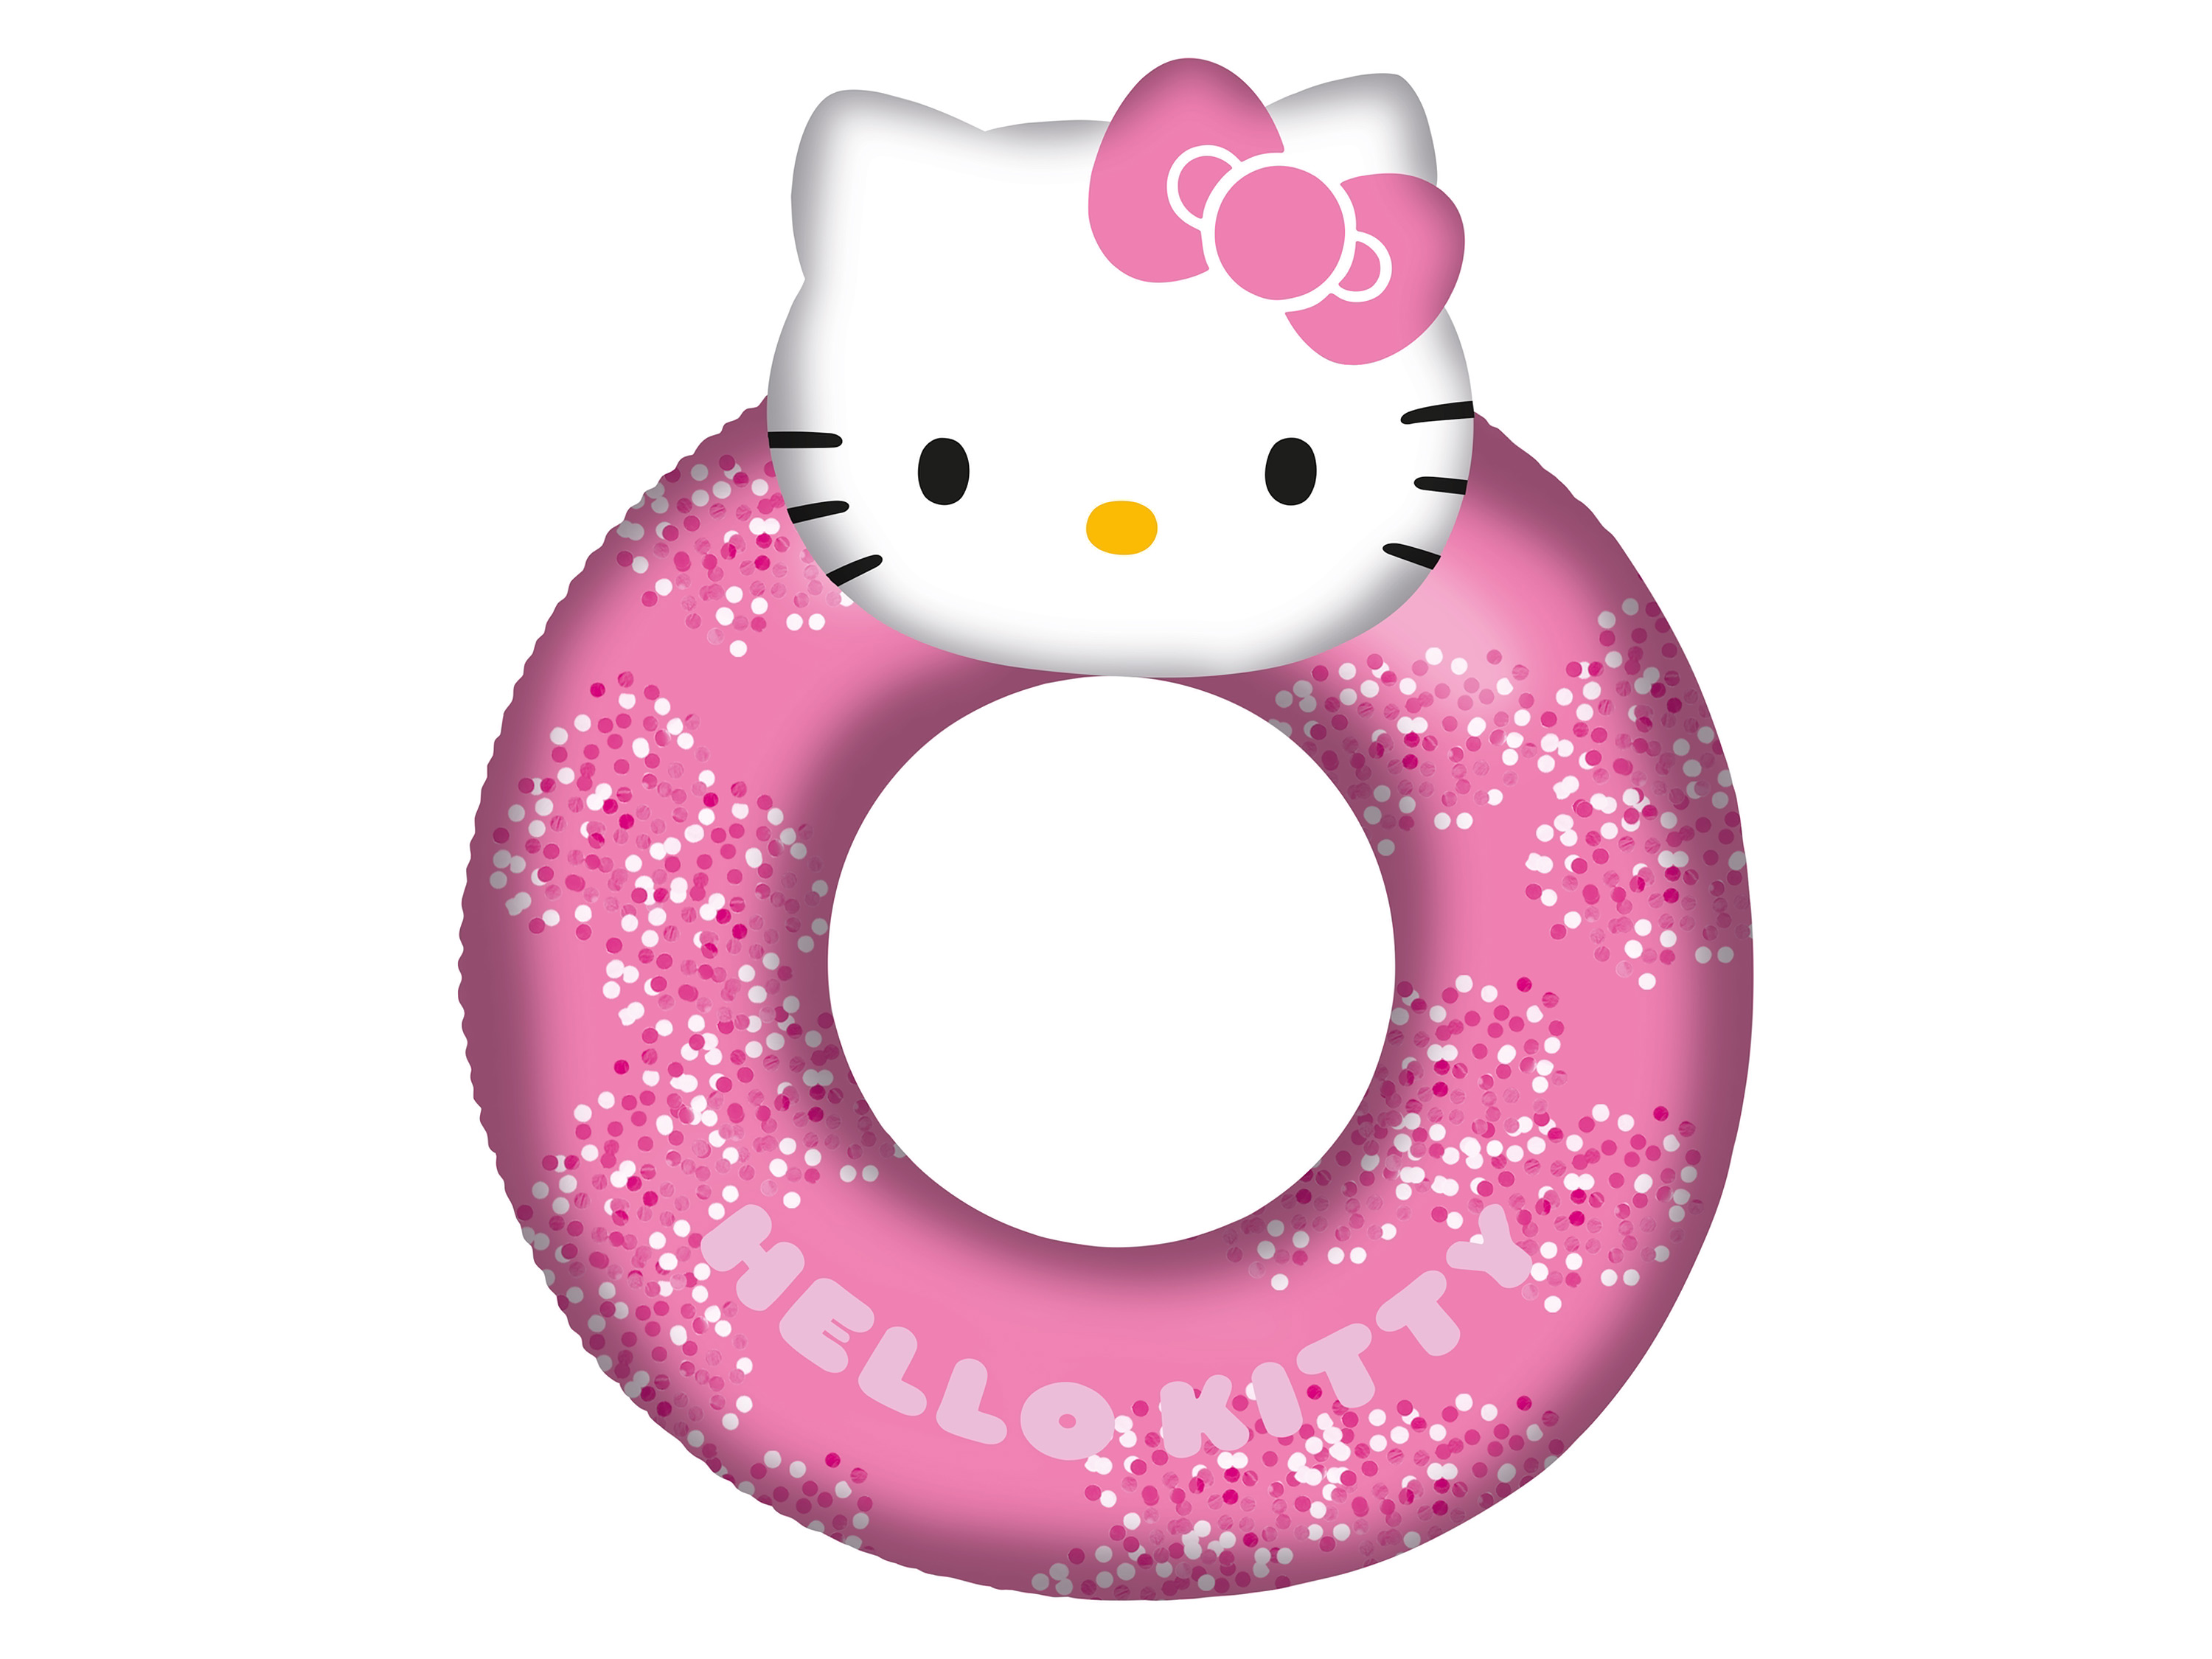 Hello Kitty großer Schwimmring, 90 cm, mit Glitzer gefüllt